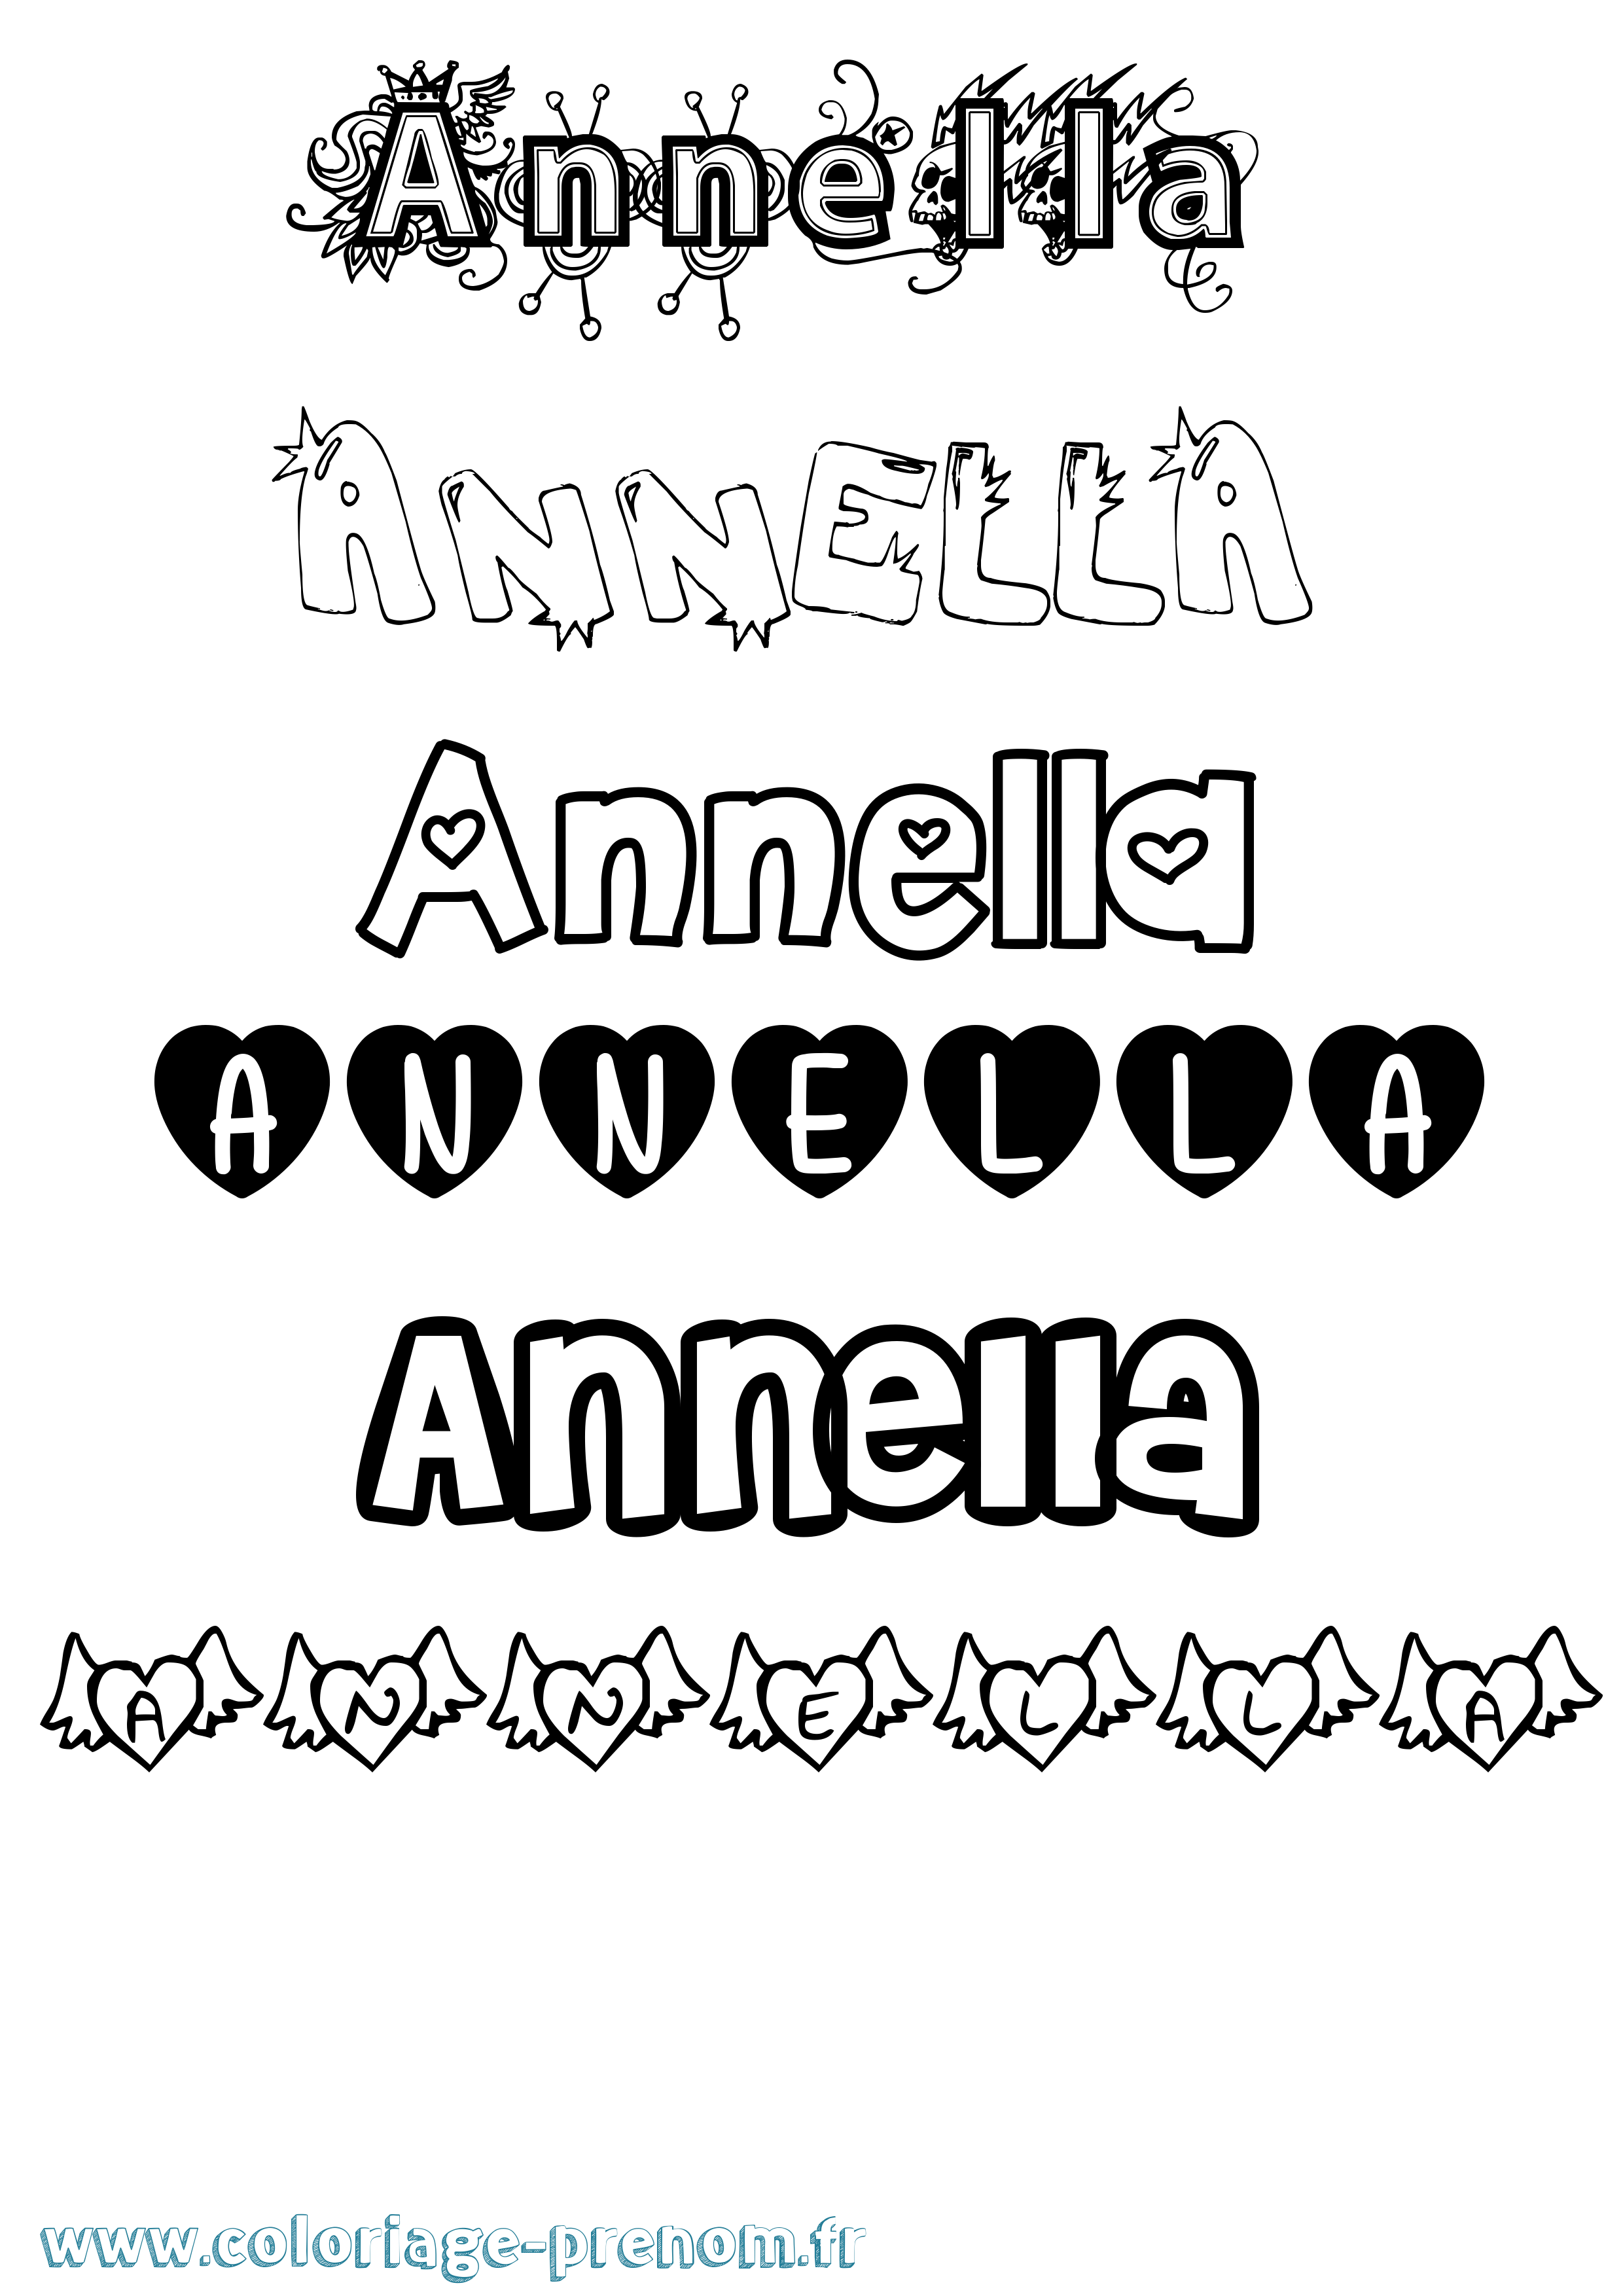 Coloriage prénom Annella Girly